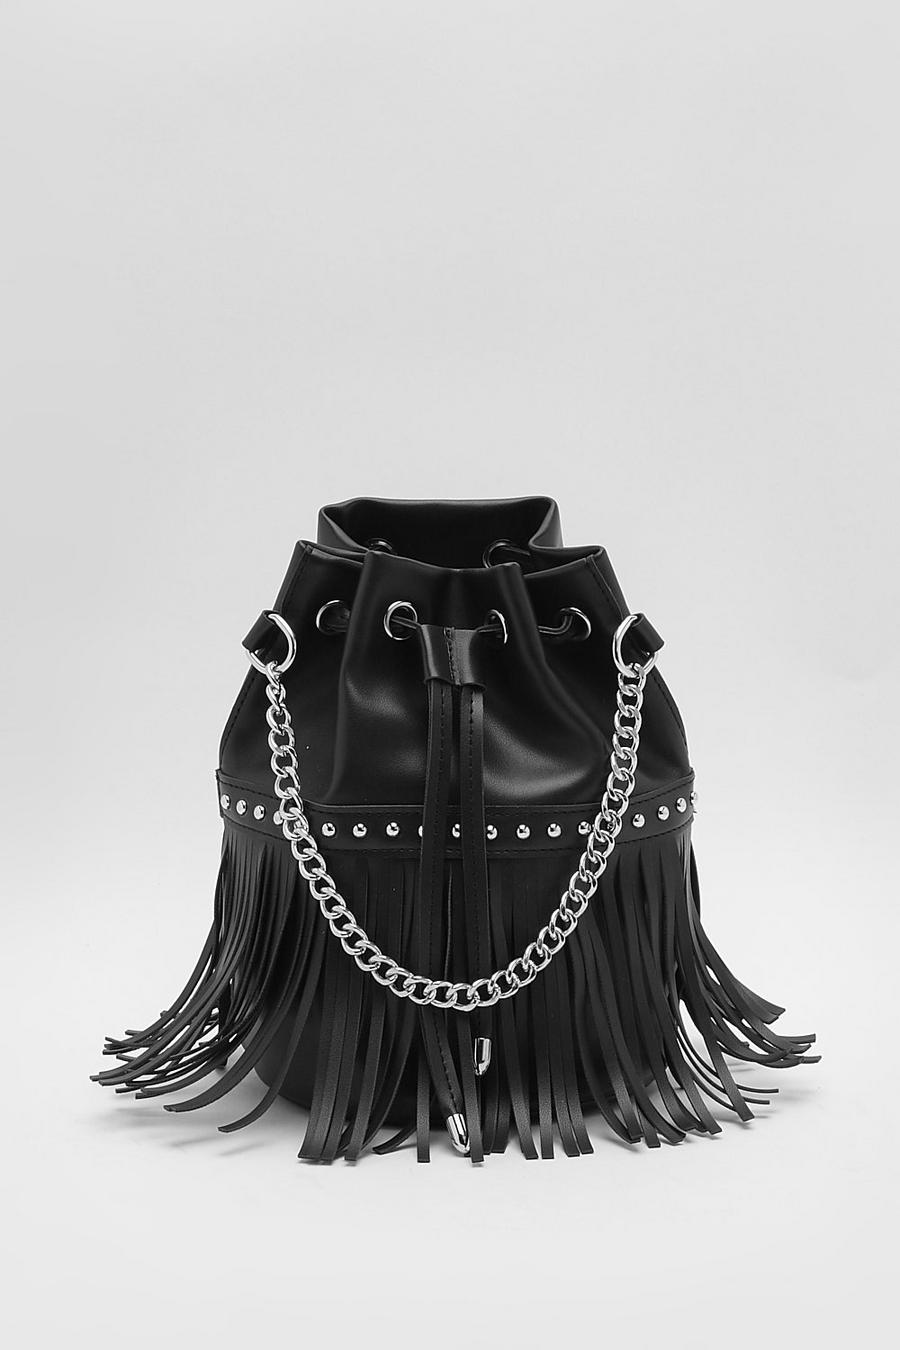 Black Tassel Fringe Bucket Bag